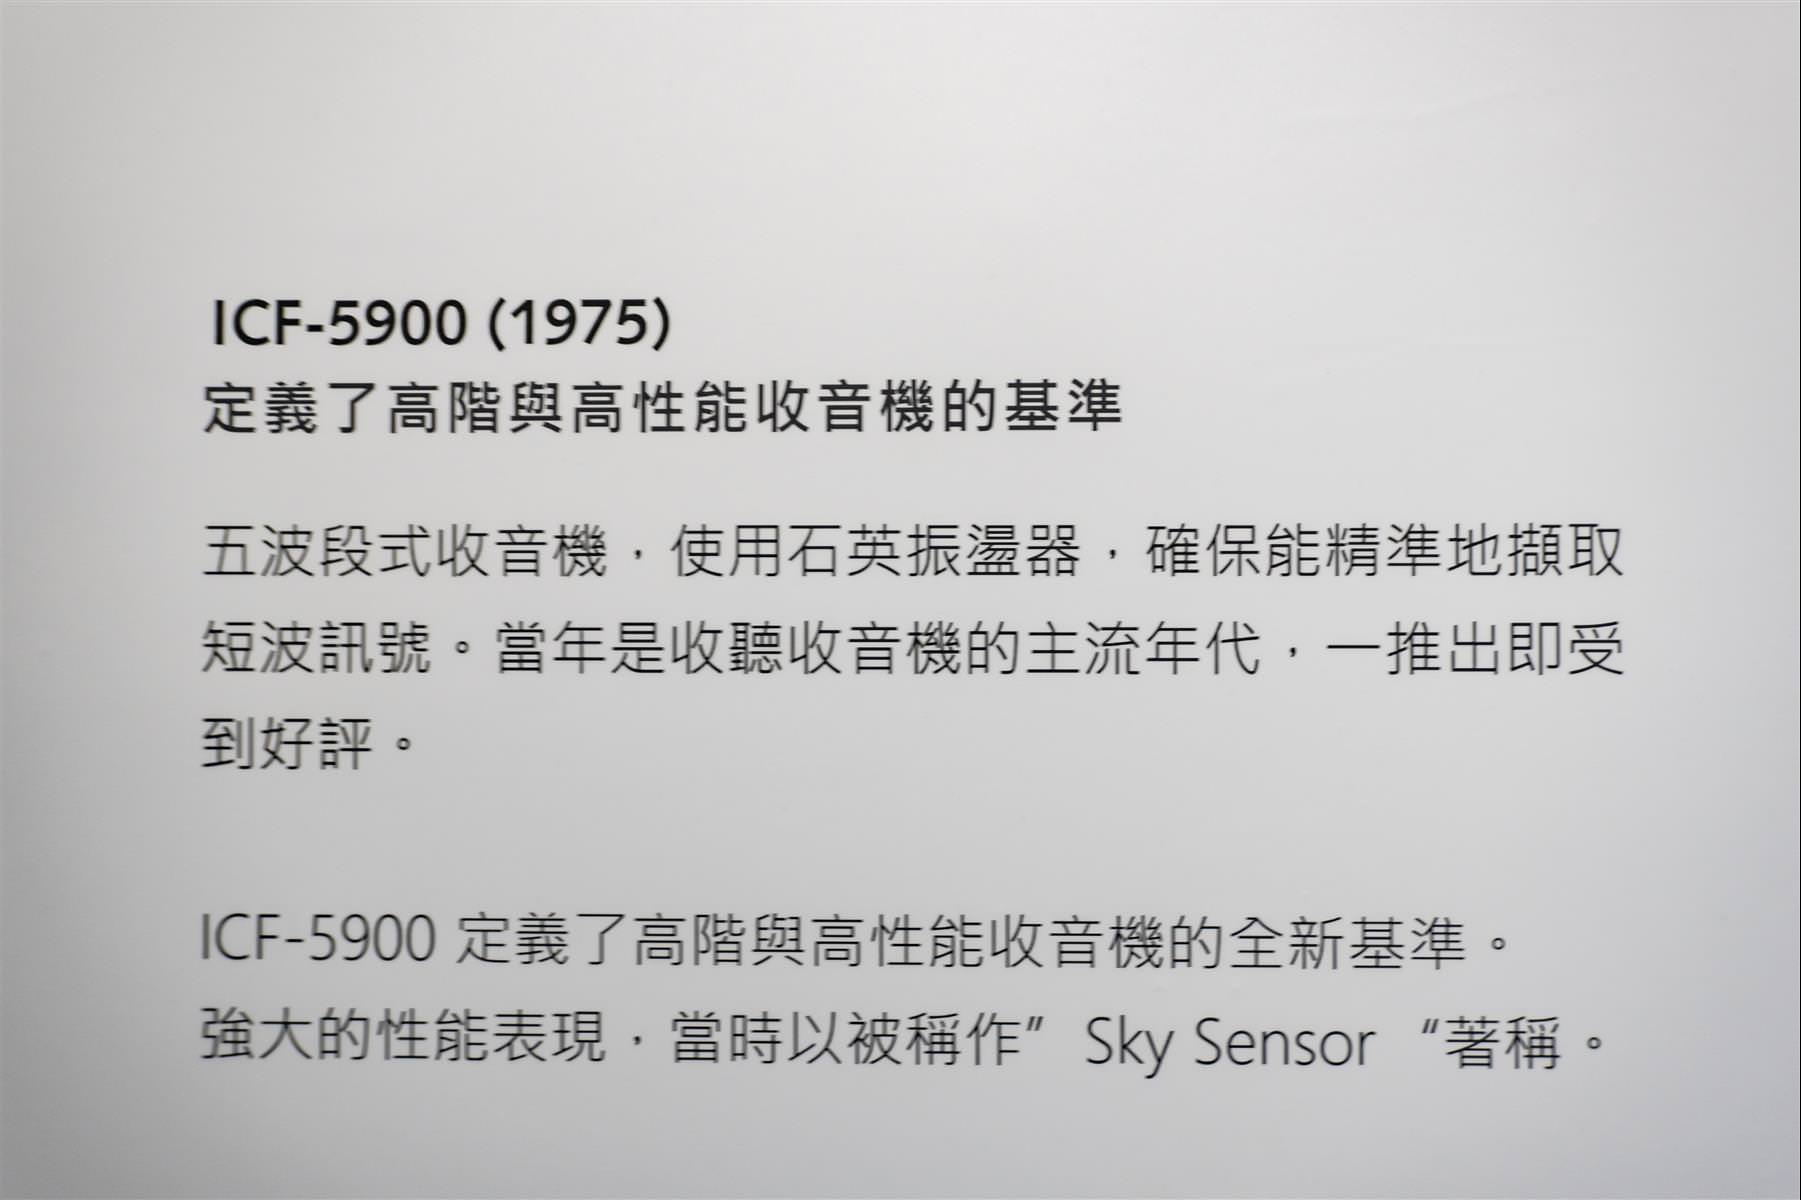 [展覽] Sony 在台 50 周年紀念展，於台北華山至 2/28 日止